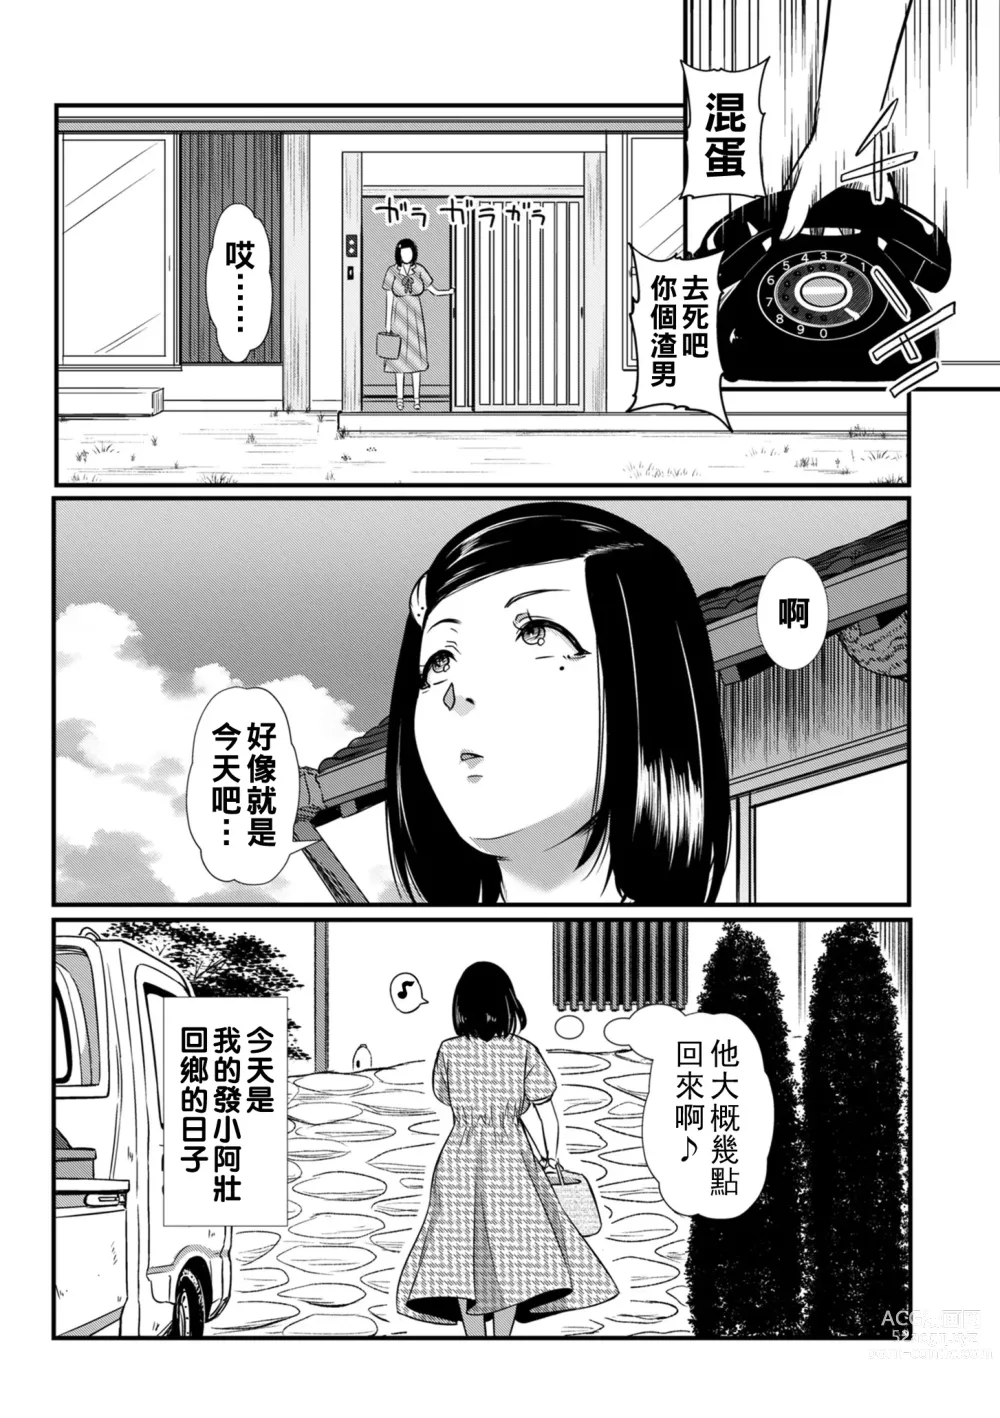 Page 5 of manga Sunao ni Narenakatta Futari wa